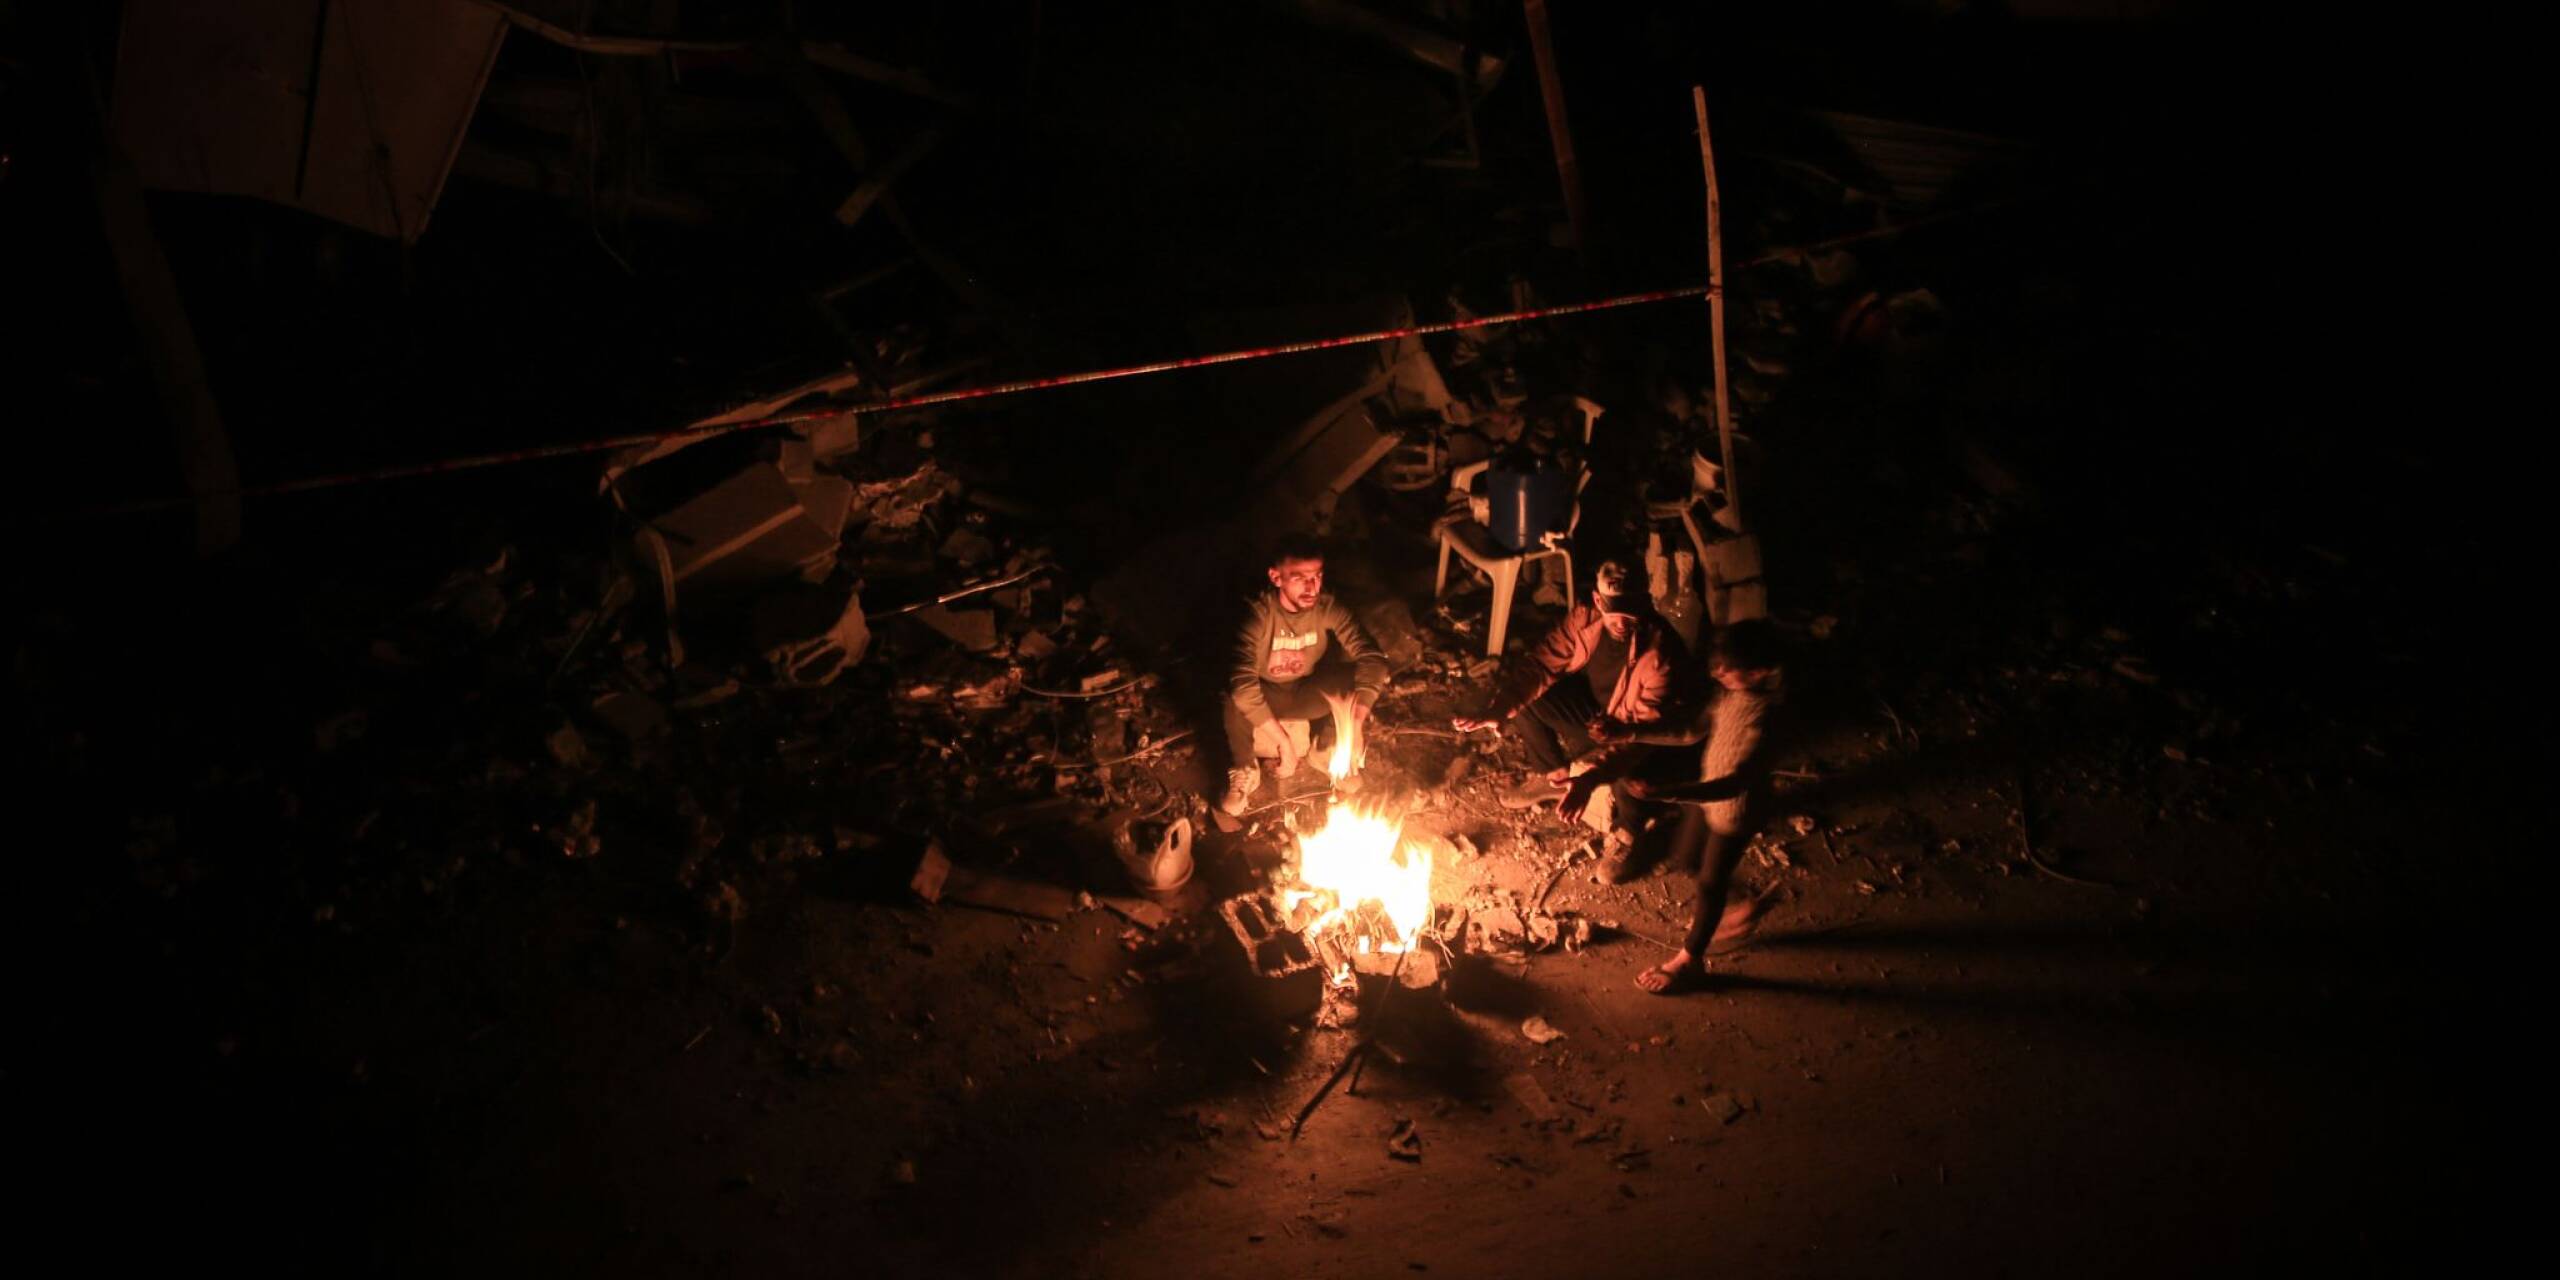 Bewohner und Bewohnerinnen von Chan Junis im südlichen Gazastreifen wärmen sich während der vorübergehenden Kampfpause zwischen Israel und der Hamas an einem Feuer.